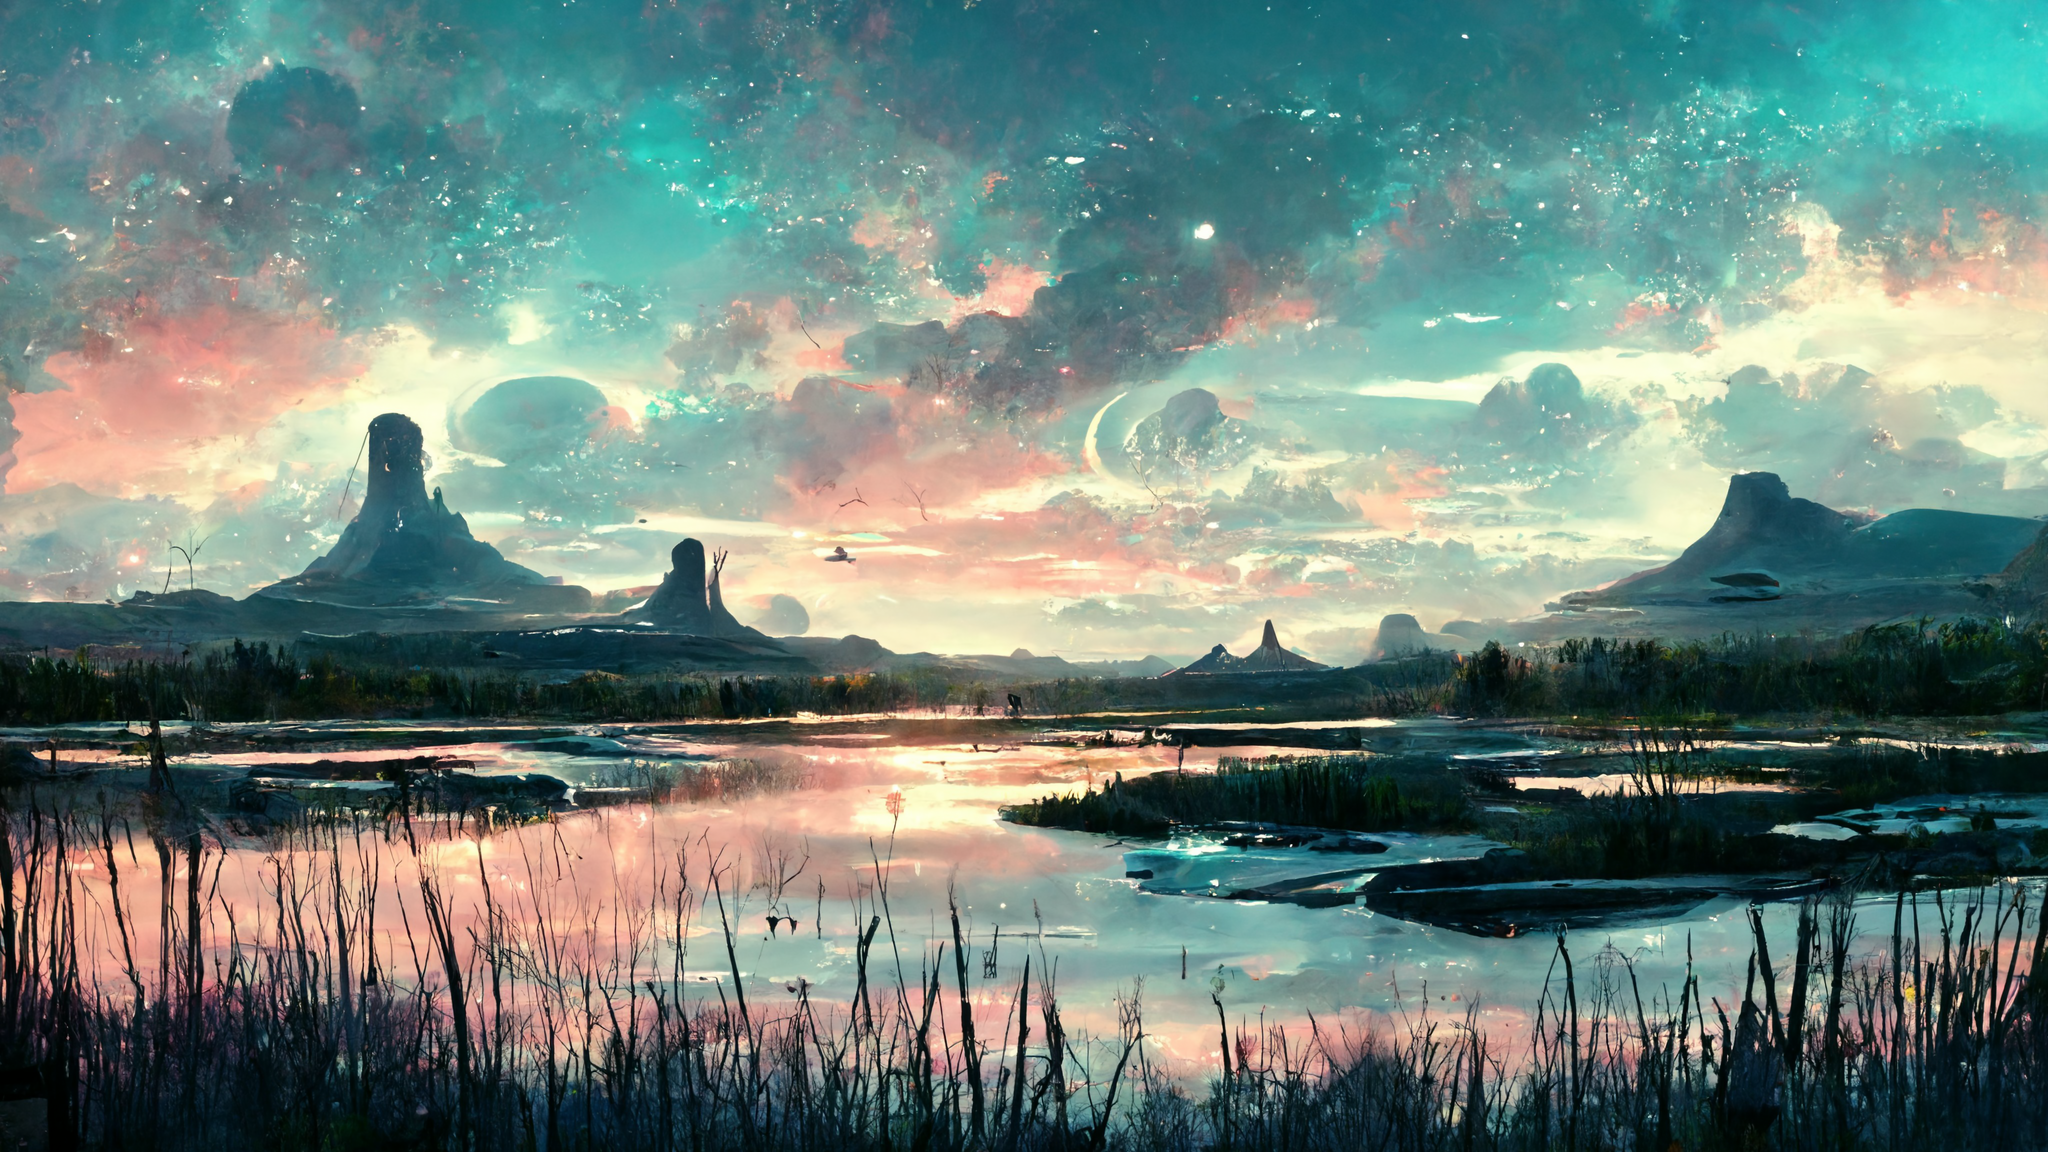 General 2048x1152 landscape alien planet science fiction peaceful clouds sky artwork